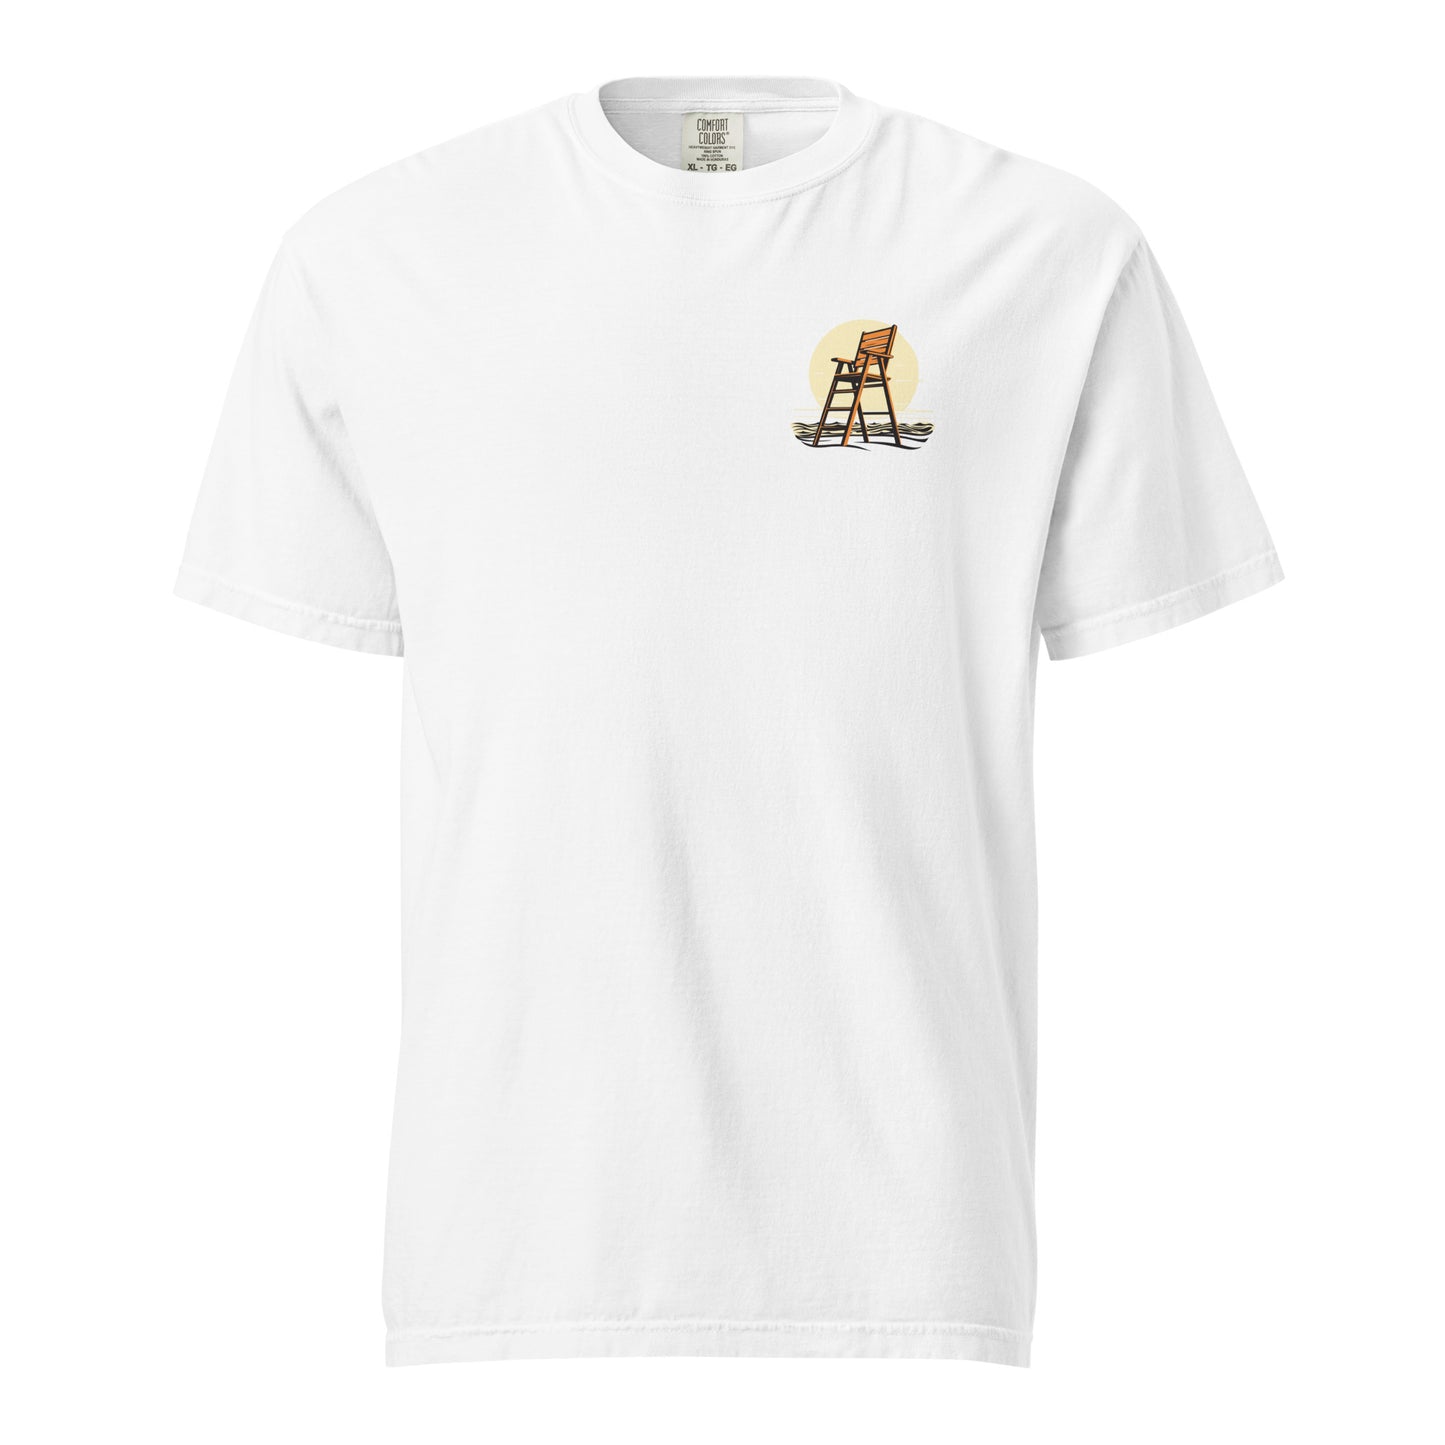 Allenhurst garment-dyed heavyweight t-shirt